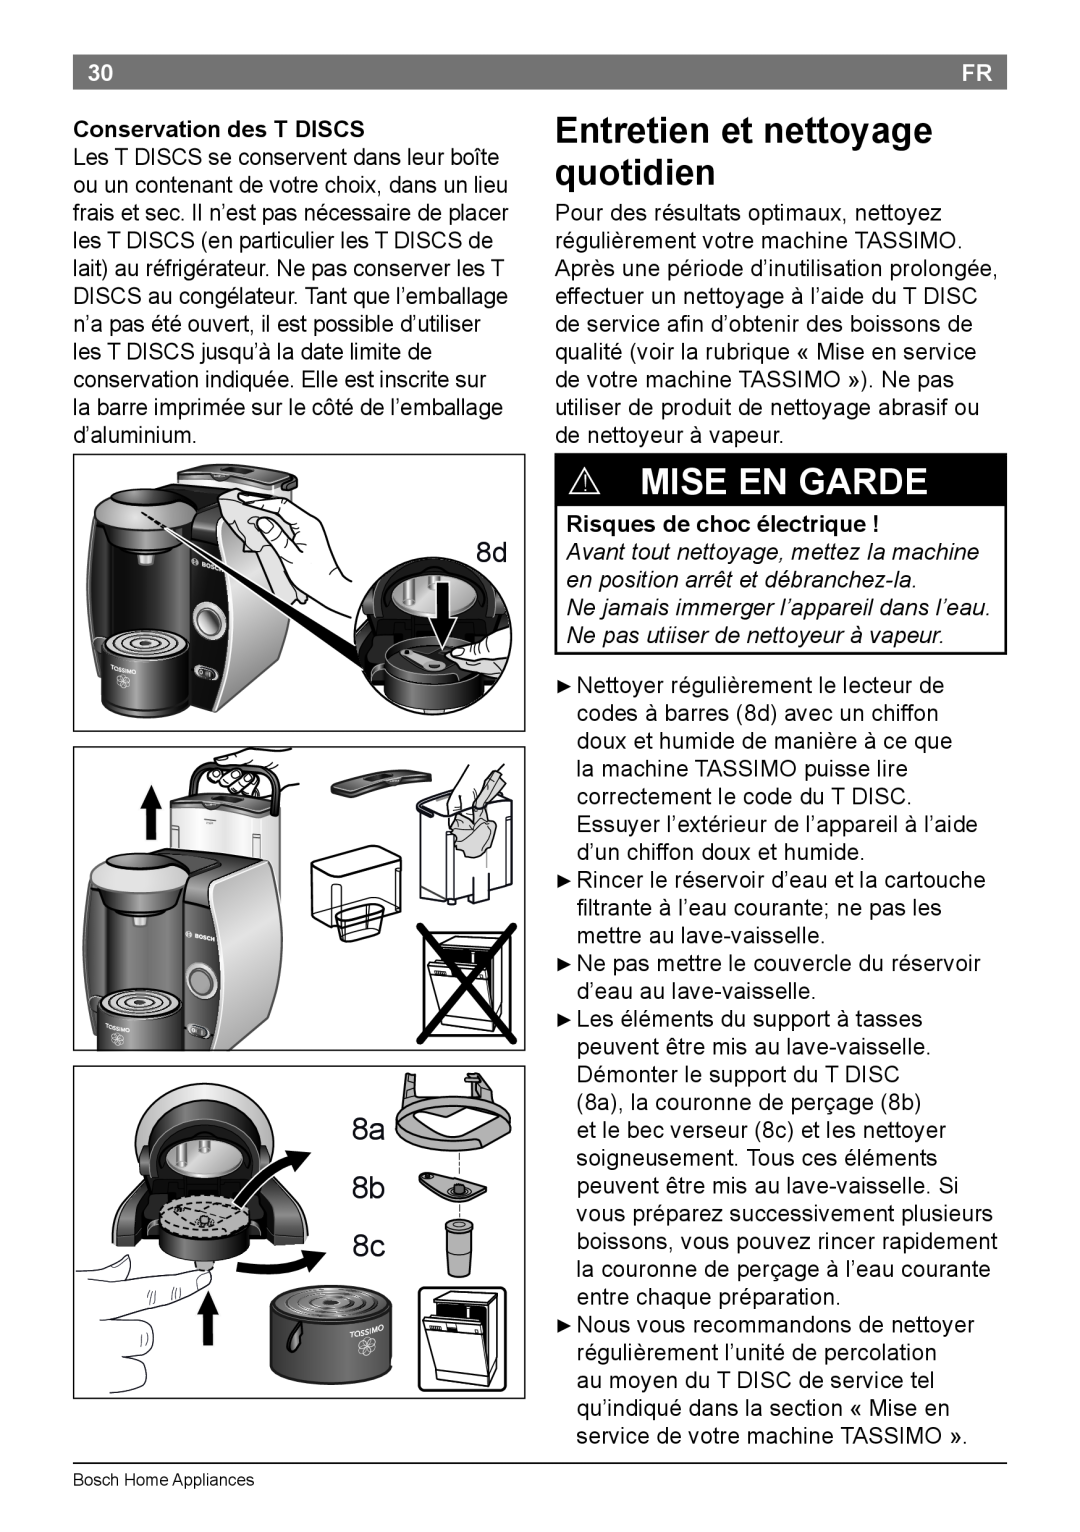 Bosch Appliances T45 Entretien et nettoyage quotidien, Conservation des T DISCS, Risques de choc électrique  